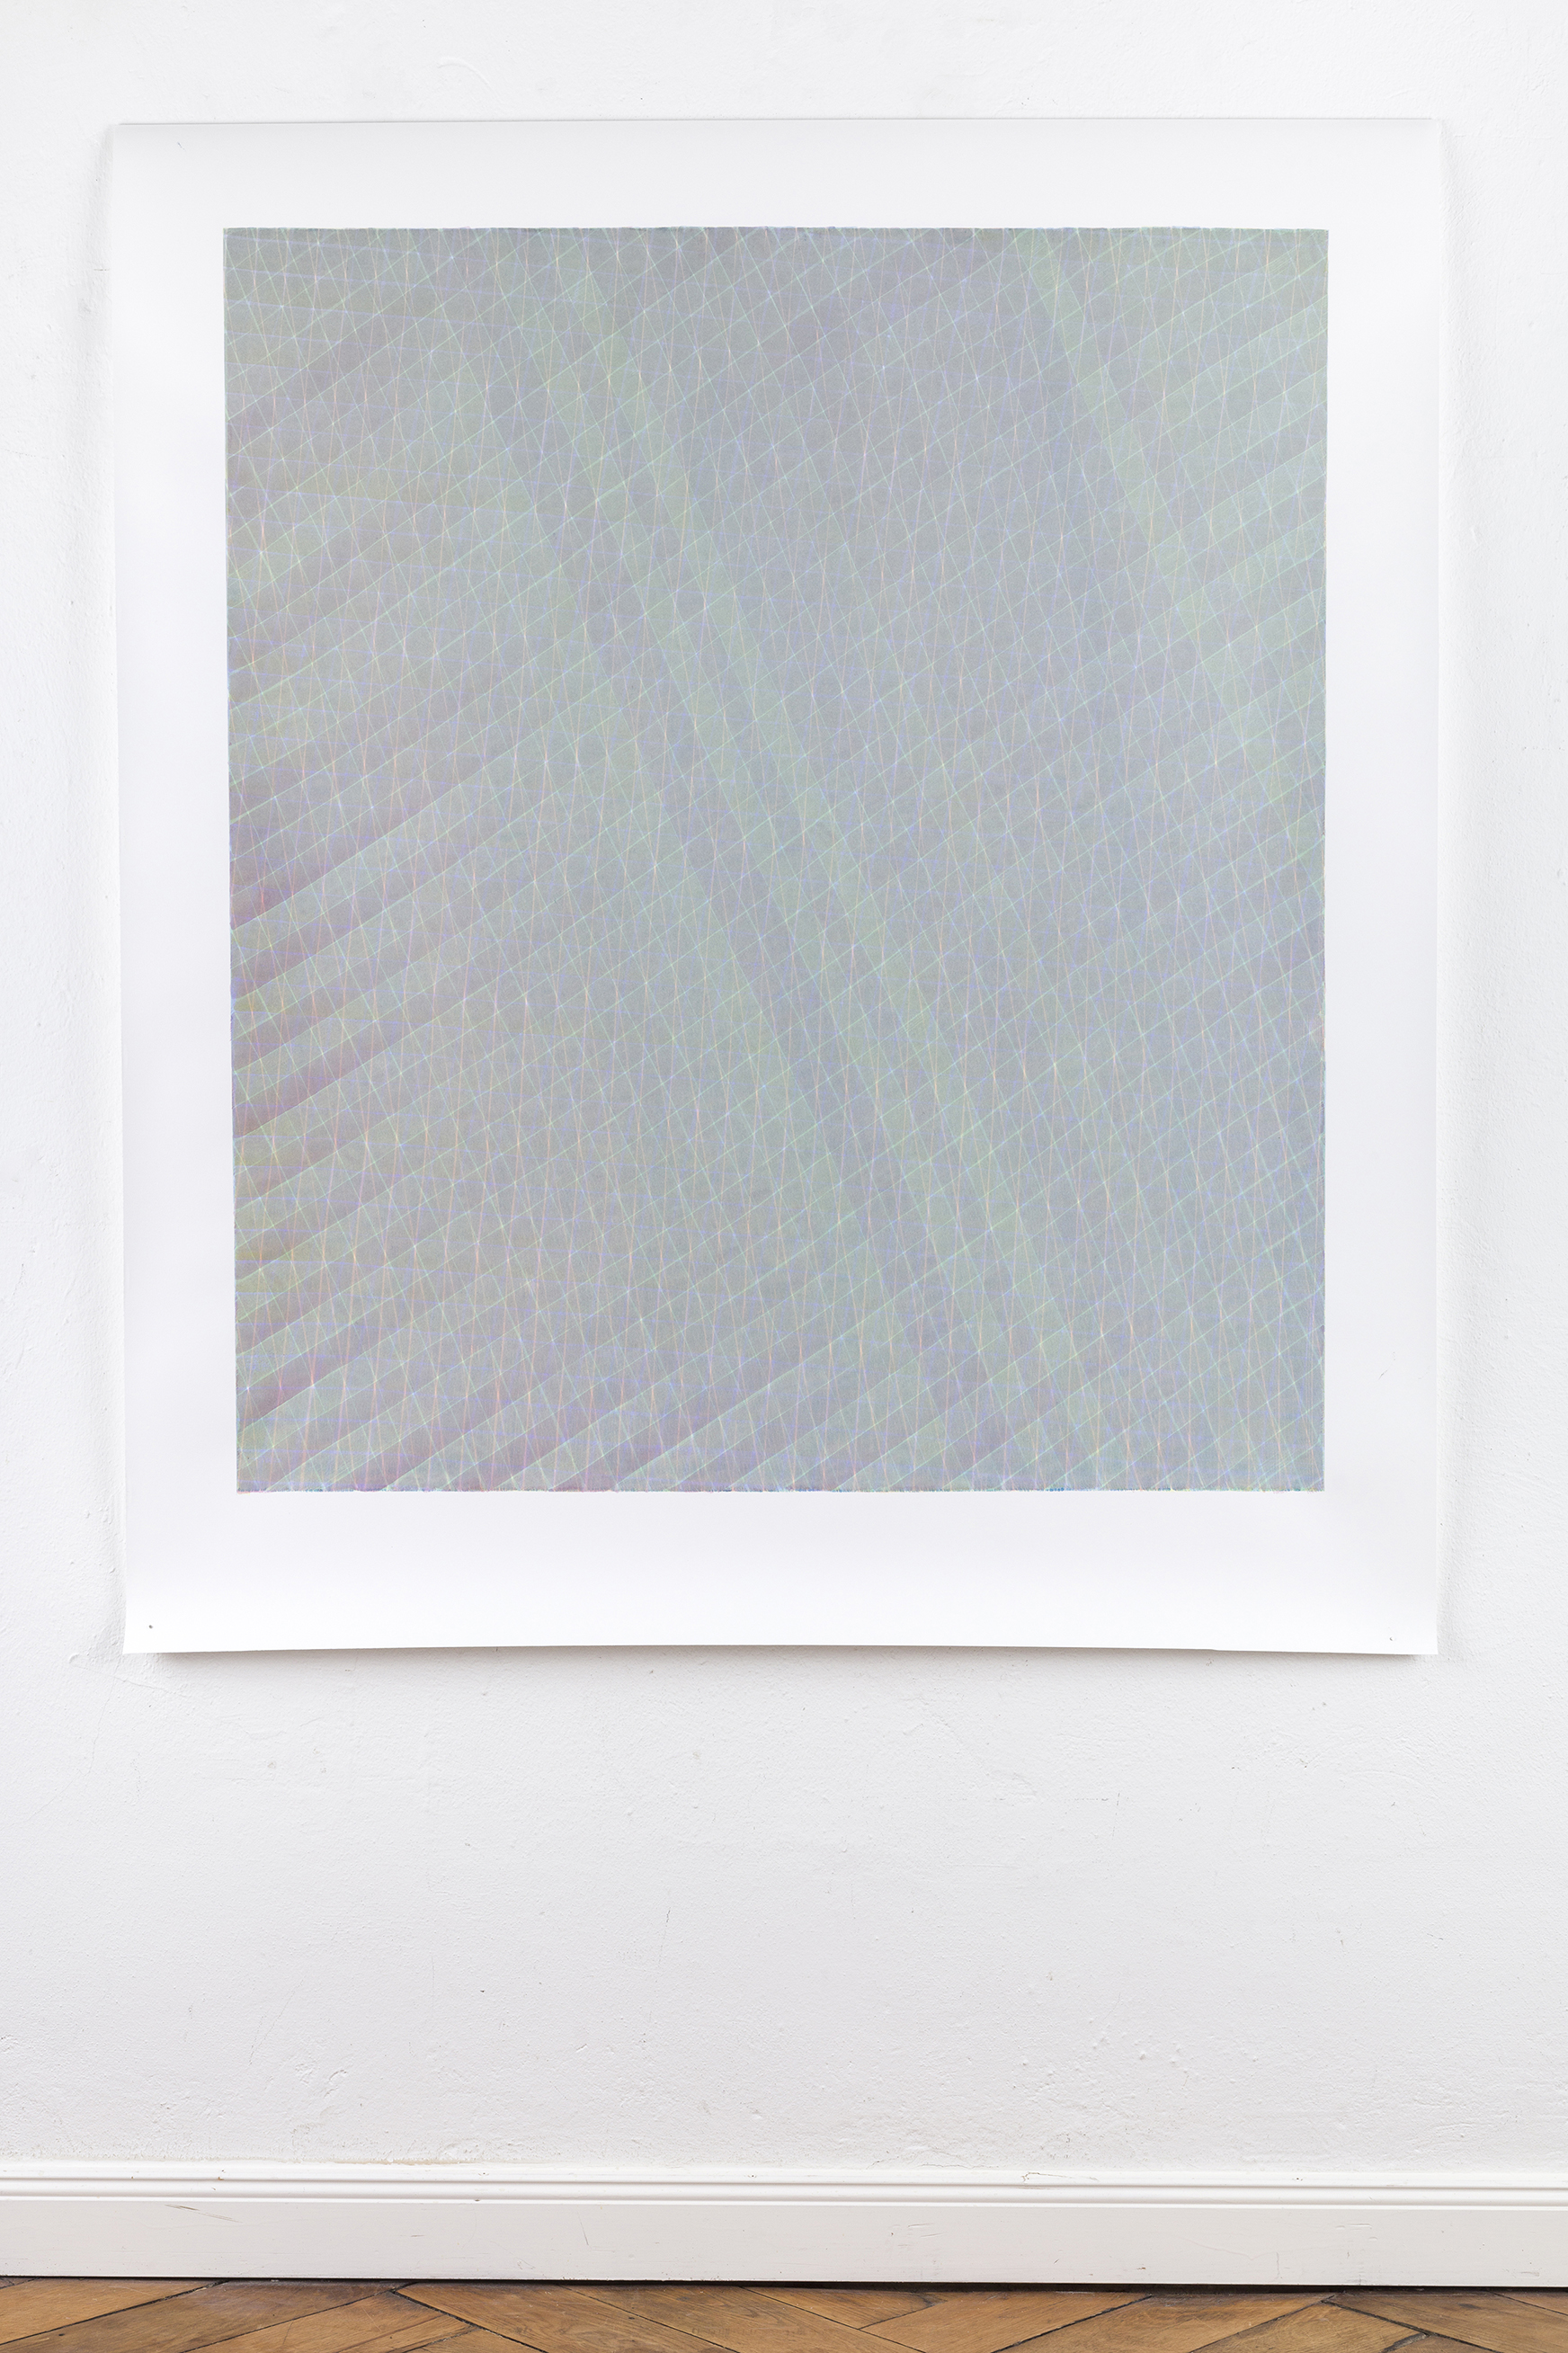 LUISE VON ROHDEN Zeichnung (7d grb/un 35/40), 2019, farbige Tusche auf Papier, 140 x 120 cm, Foto:Thomas Bruns